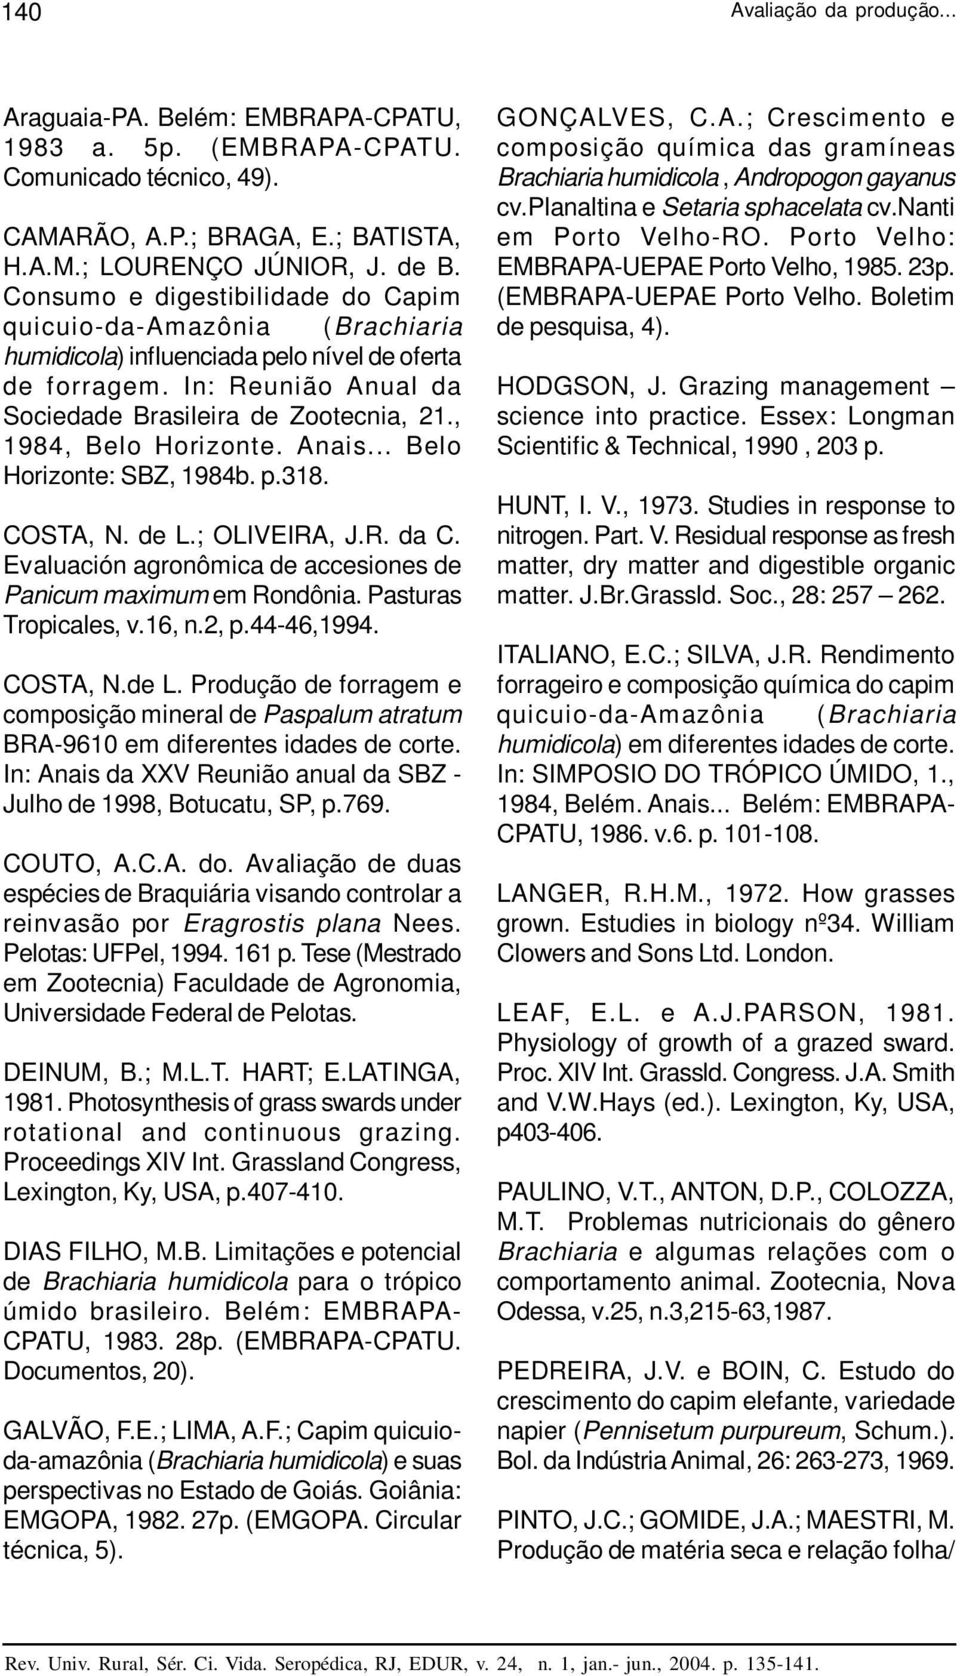 , 1984, Belo Horizonte. Anais... Belo Horizonte: SBZ, 1984b. p.318. COSTA, N. de L.; OLIVEIRA, J.R. da C. Evaluación agronômica de accesiones de Panicum maximum em Rondônia. Pasturas Tropicales, v.